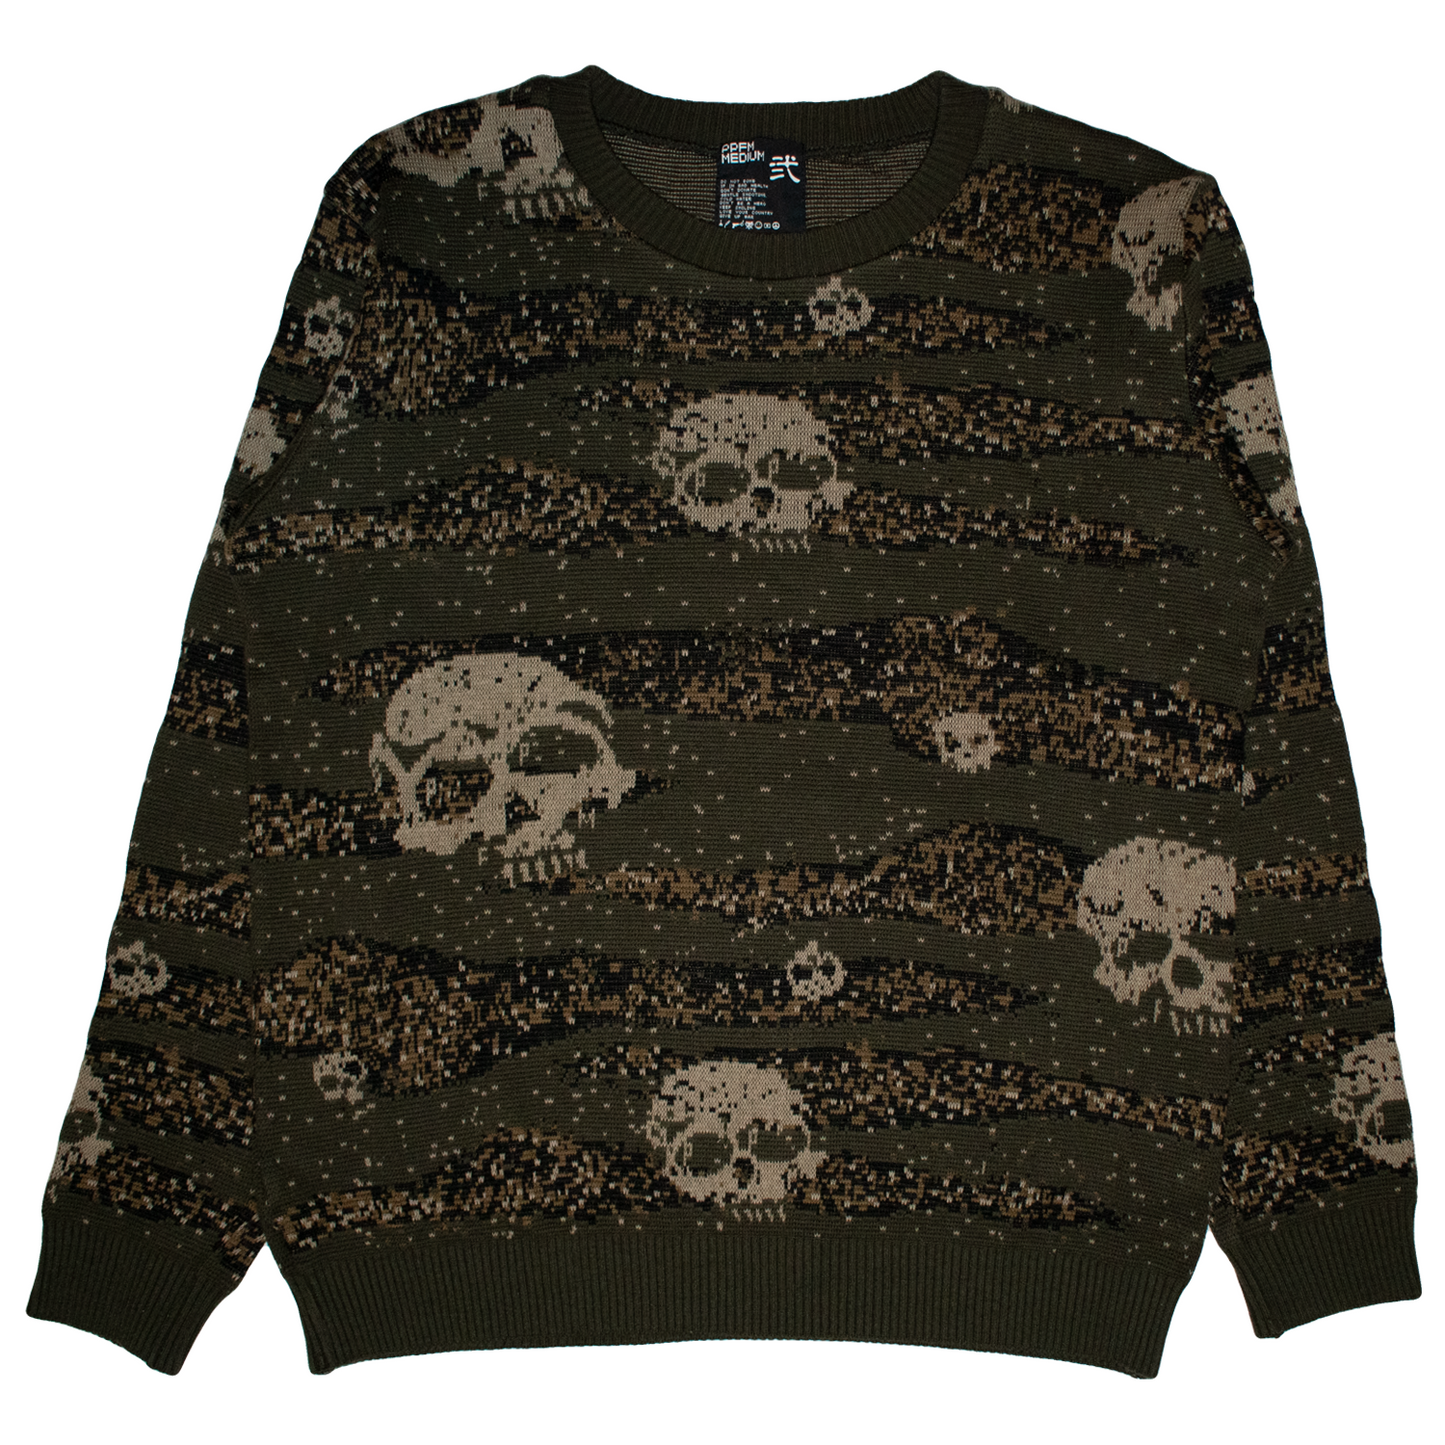 PPFM Skull Digi Camo Knit Sweater - 2005